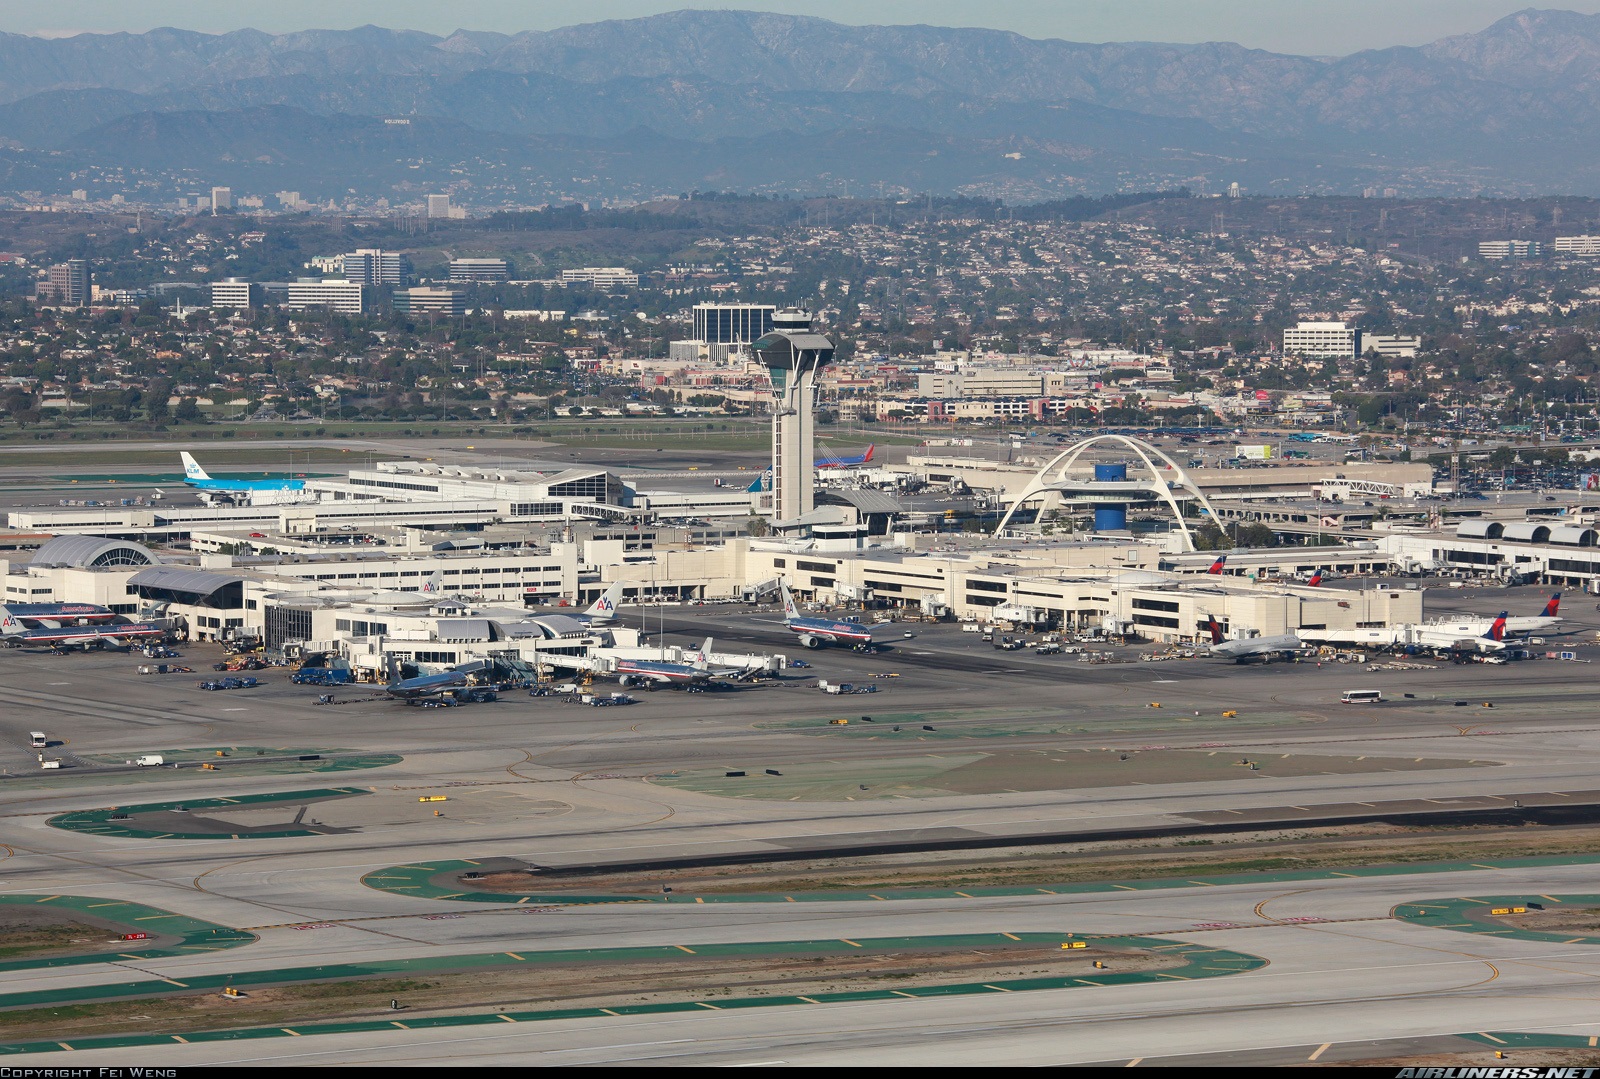 Paralizado Aeropuerto internacional de Los Ángeles tras falla informática